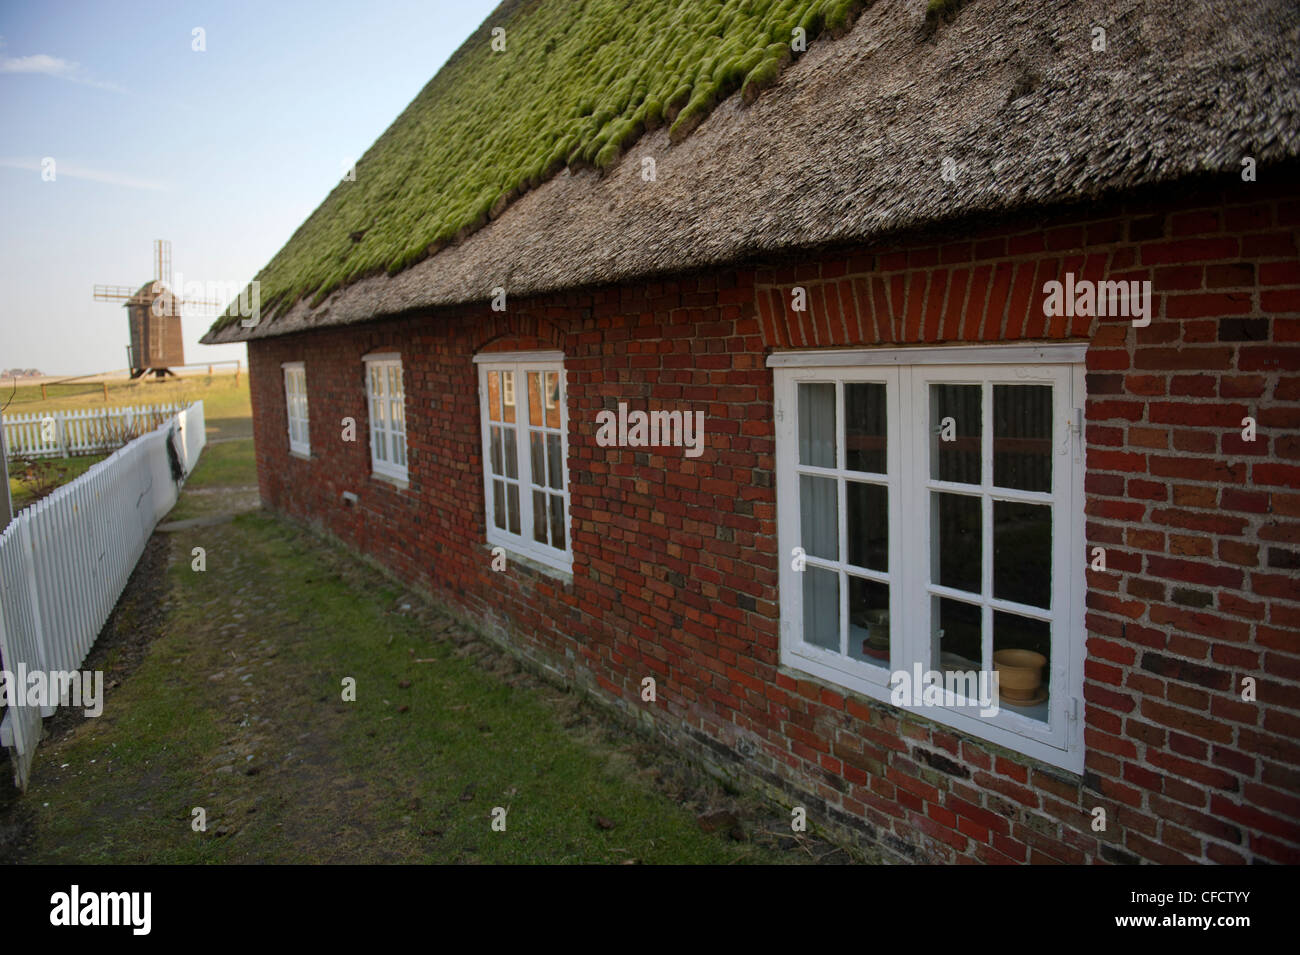 Traditionellen friesischen Häuser am Ketelswarf auf Hallig Langeneß, eine "Insel" in der UNESCO Website Wadden Meer von Norddeutschland Stockfoto